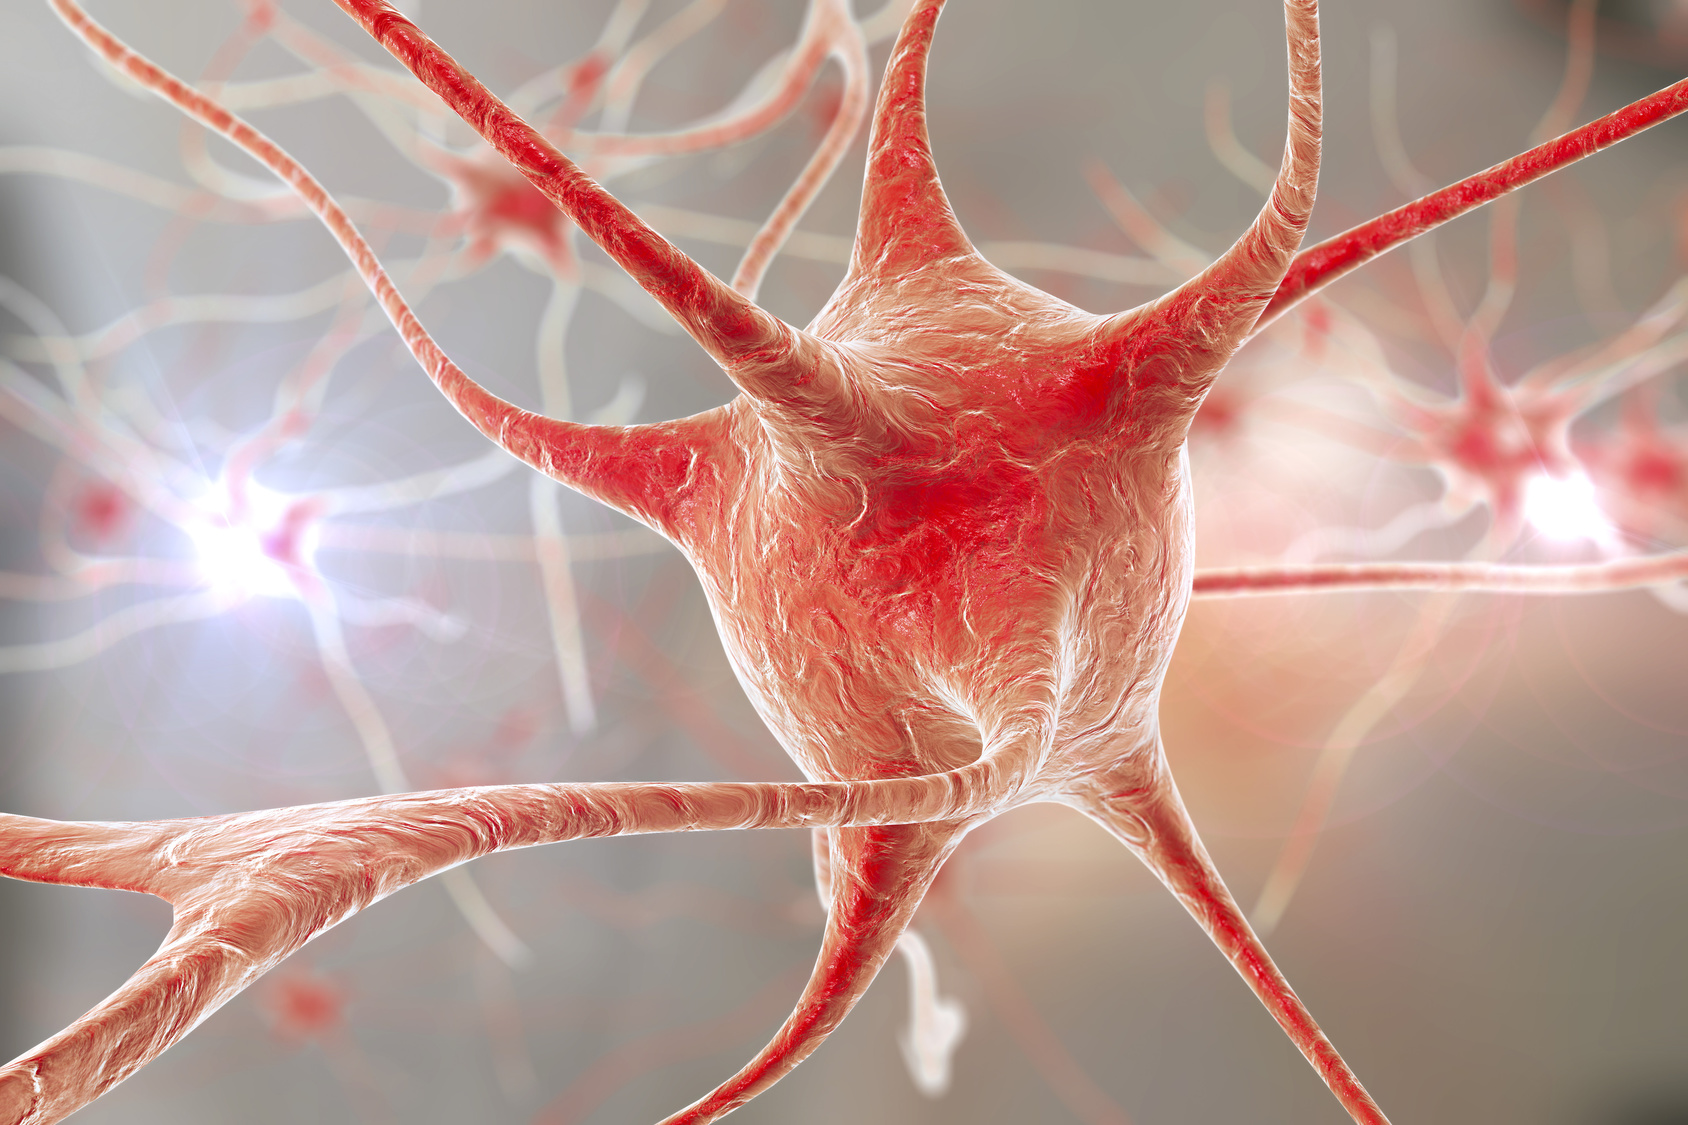 Le fonctionnement des neurones, les cellules du cerveau par où circule l'influx nerveux, reste mal connu. © Kateryna_Kon, Fotolia